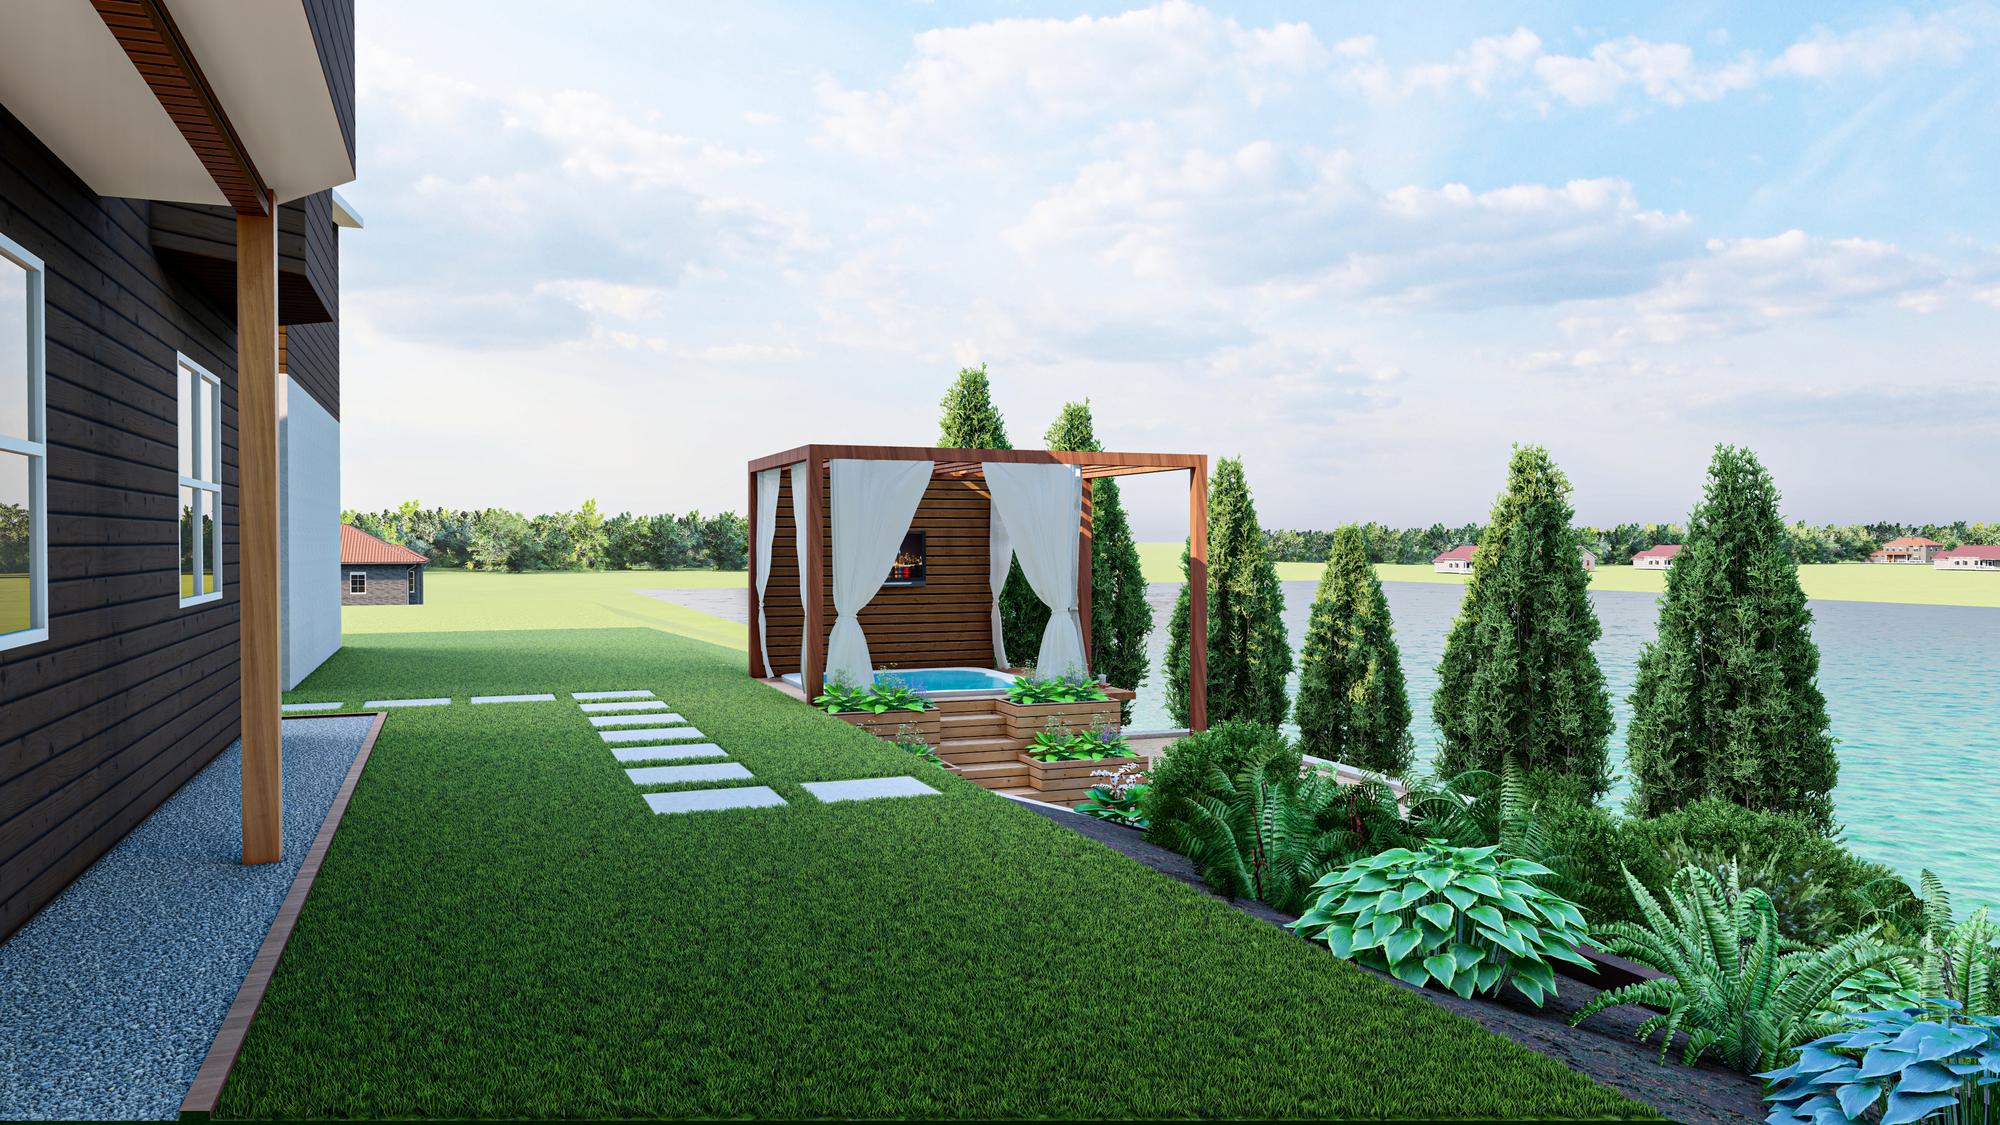 طراحی فضای سبز ویلا با چمن مصنوعی، گرین وال و فنس چمنی: لوکس، باطراوت و ماندگار